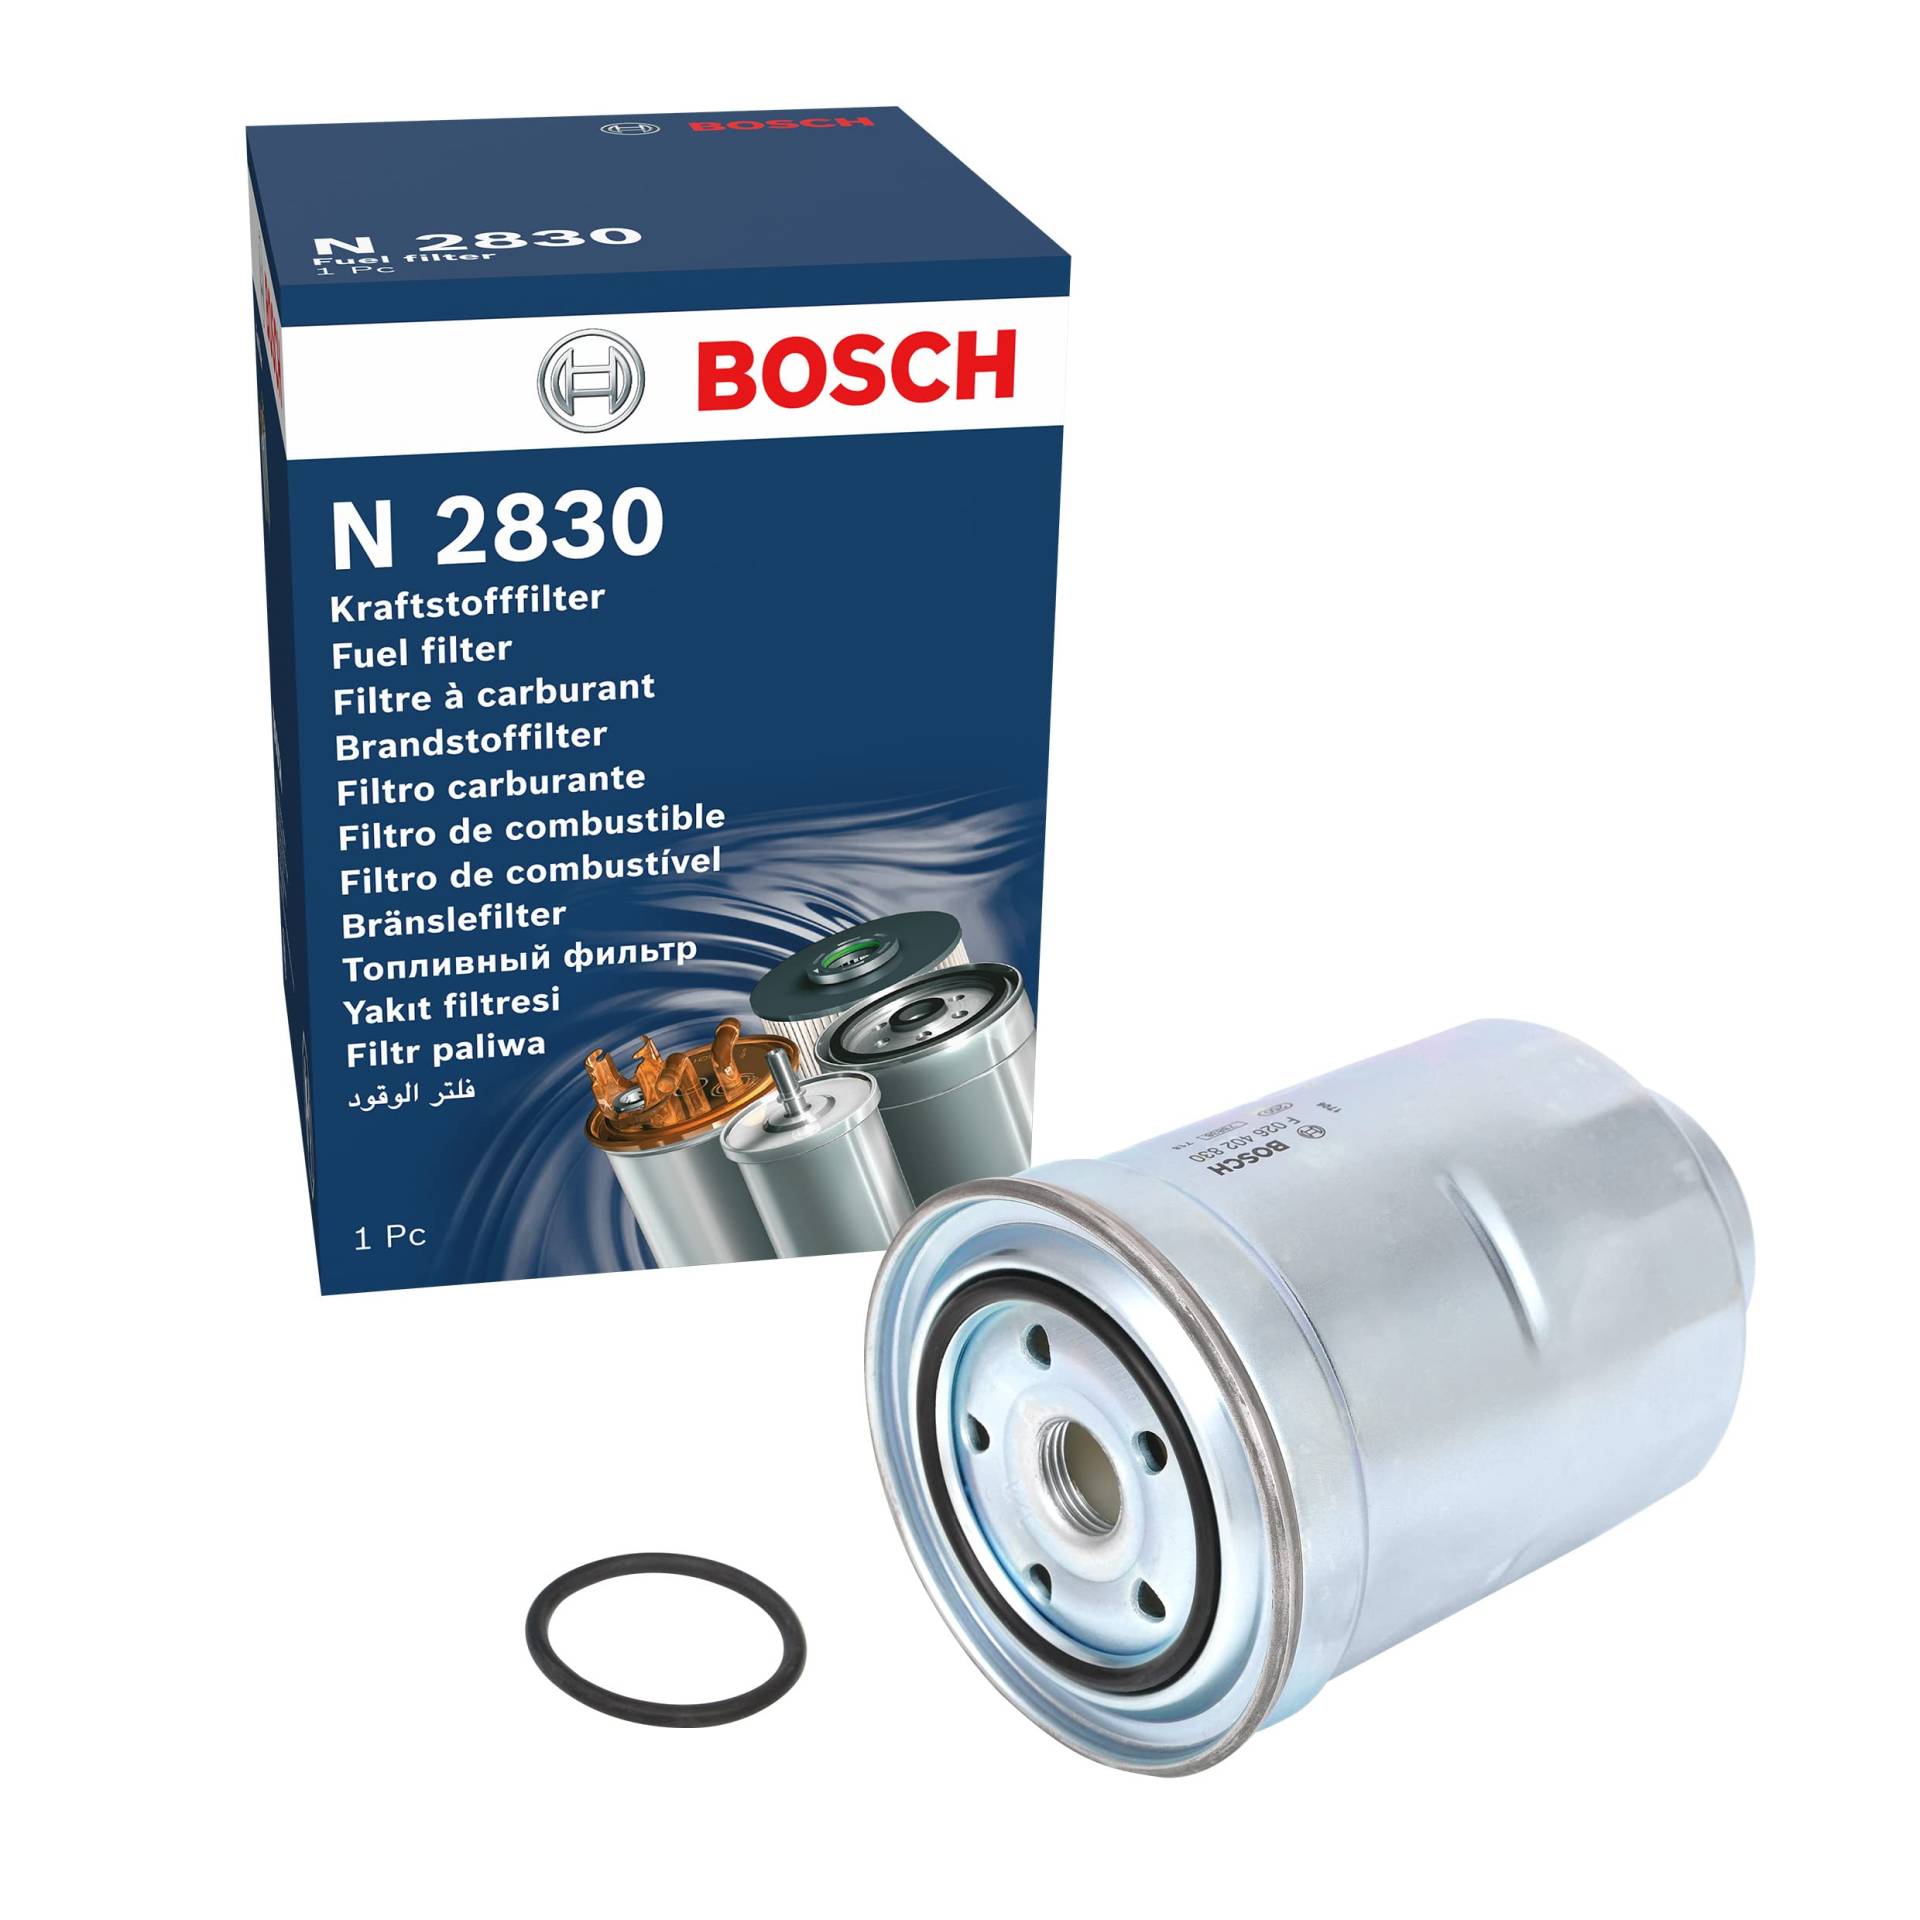 Bosch N2830 - Dieselfilter Auto von Bosch Automotive